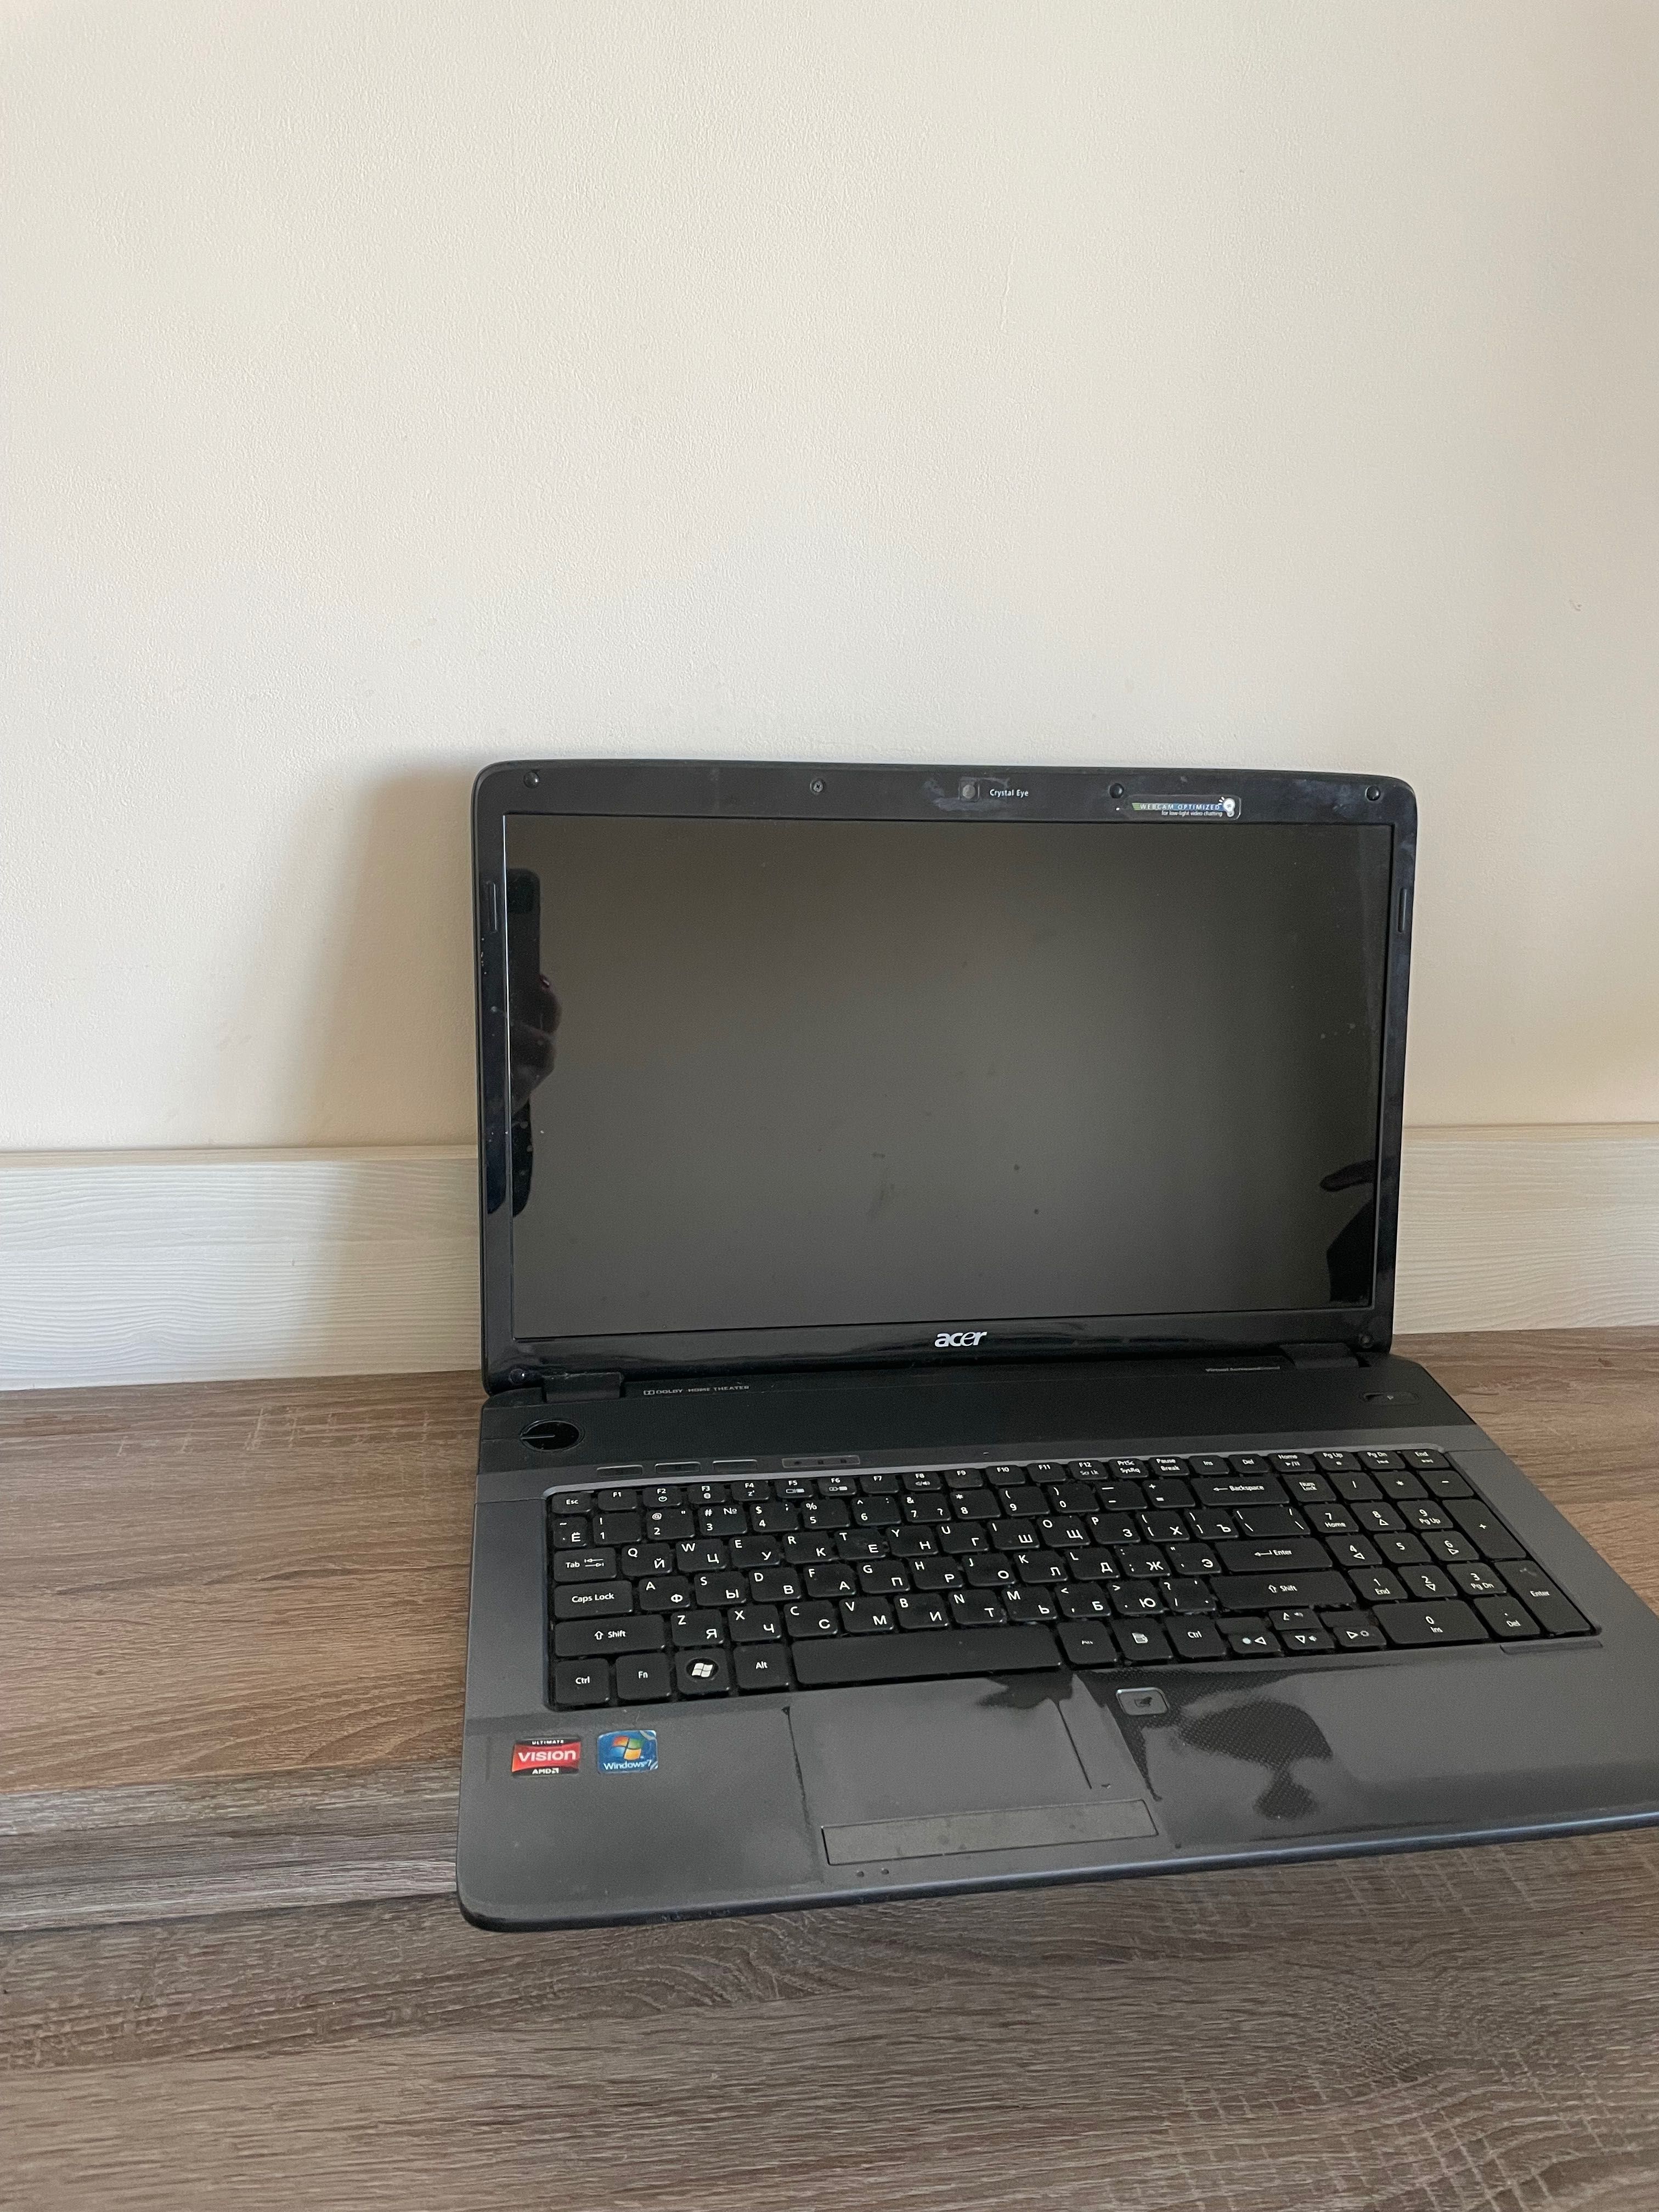 Продам ноутбук з великим екраном для дизайнерів Acer Aspiro 7540